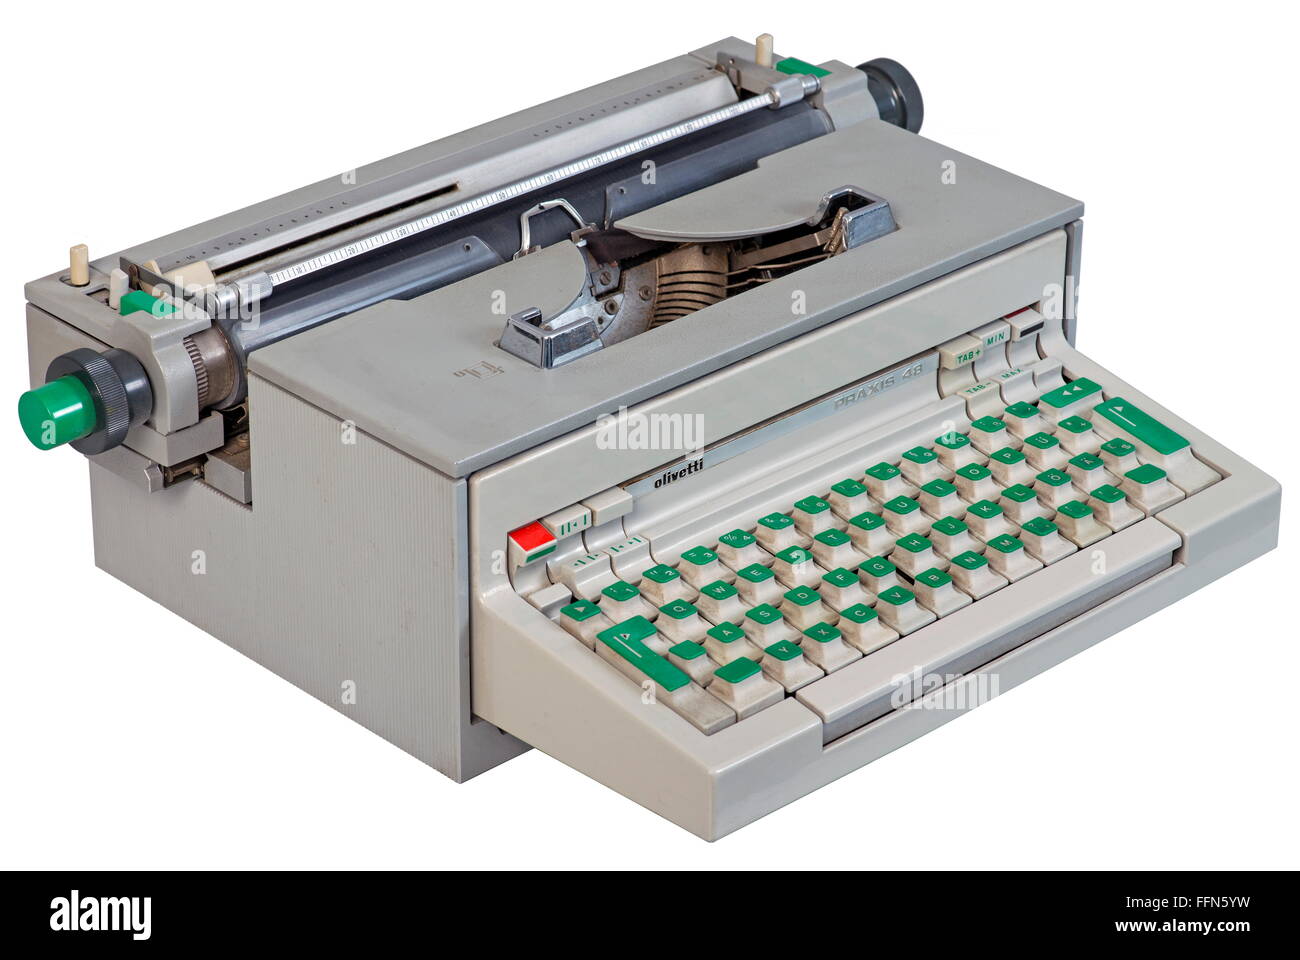 Ordenador / electrónica,ordenador,máquina de escribir eléctrica Olivetti  Praxis 48,diseño de Ettore Sottsass y Hans von Klier,Italia,1964,material  sintético,materiales  sintéticos,sintéticos,sintéticos,sintéticos,sintéticos,gris,gris,escritura  ...